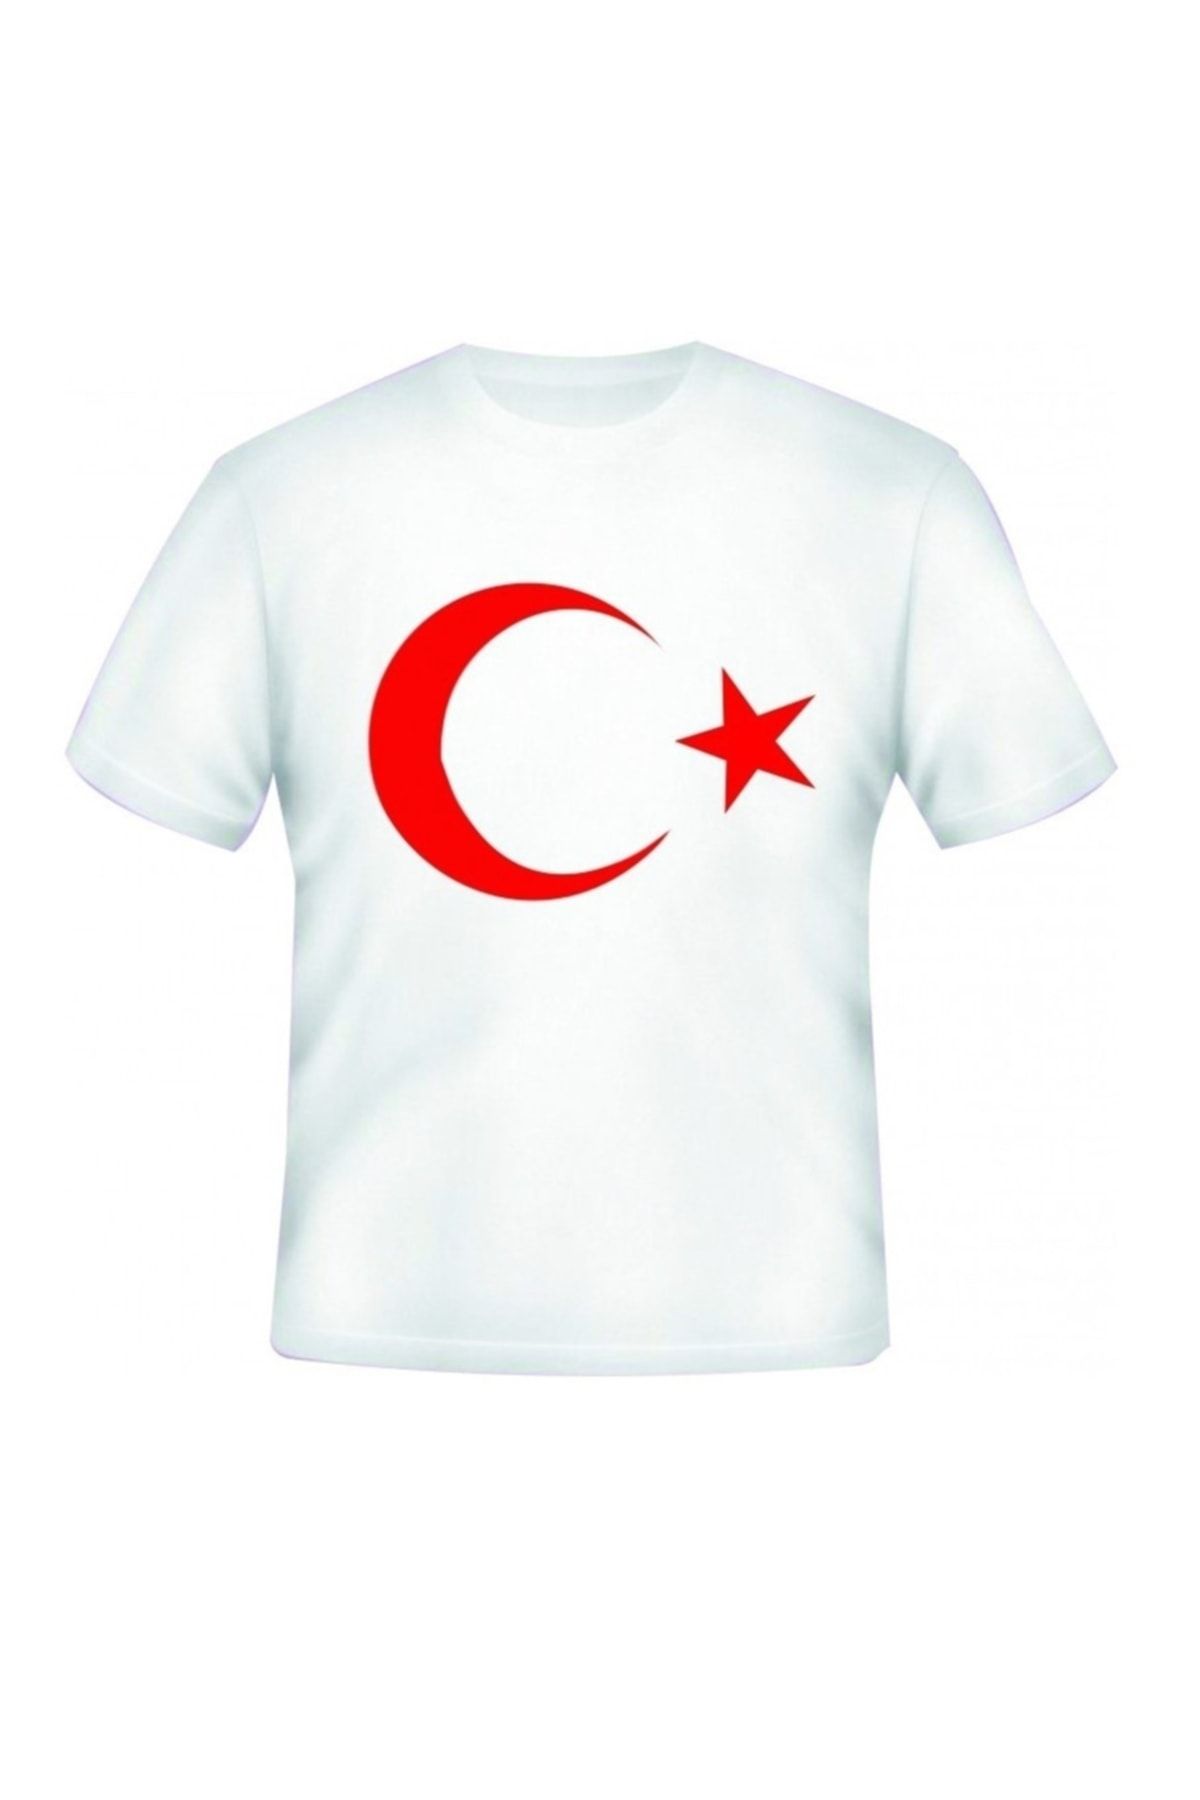 ADA BEBEK ÇOCUK Beyaz Türk Bayraklı Ay Yıldız Desenli Kız Erkek Tişört